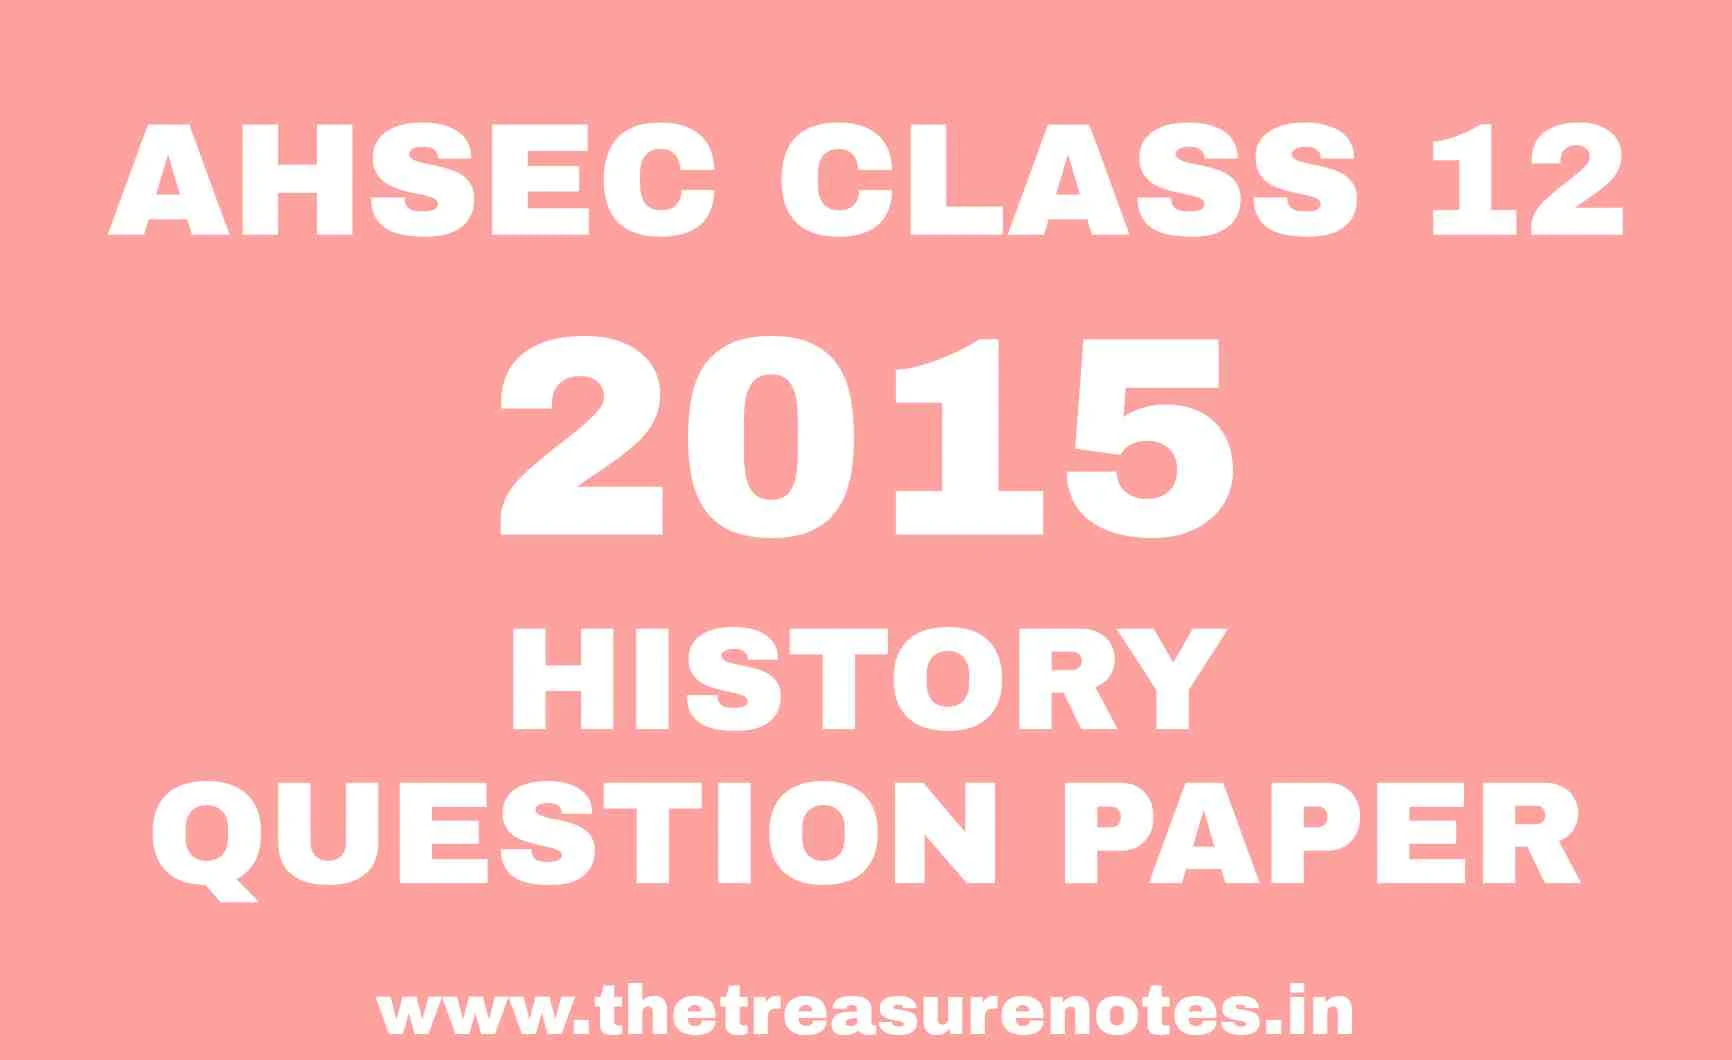 AHSEC CLASS 12 HISTORY QUESTION PAPER 2015